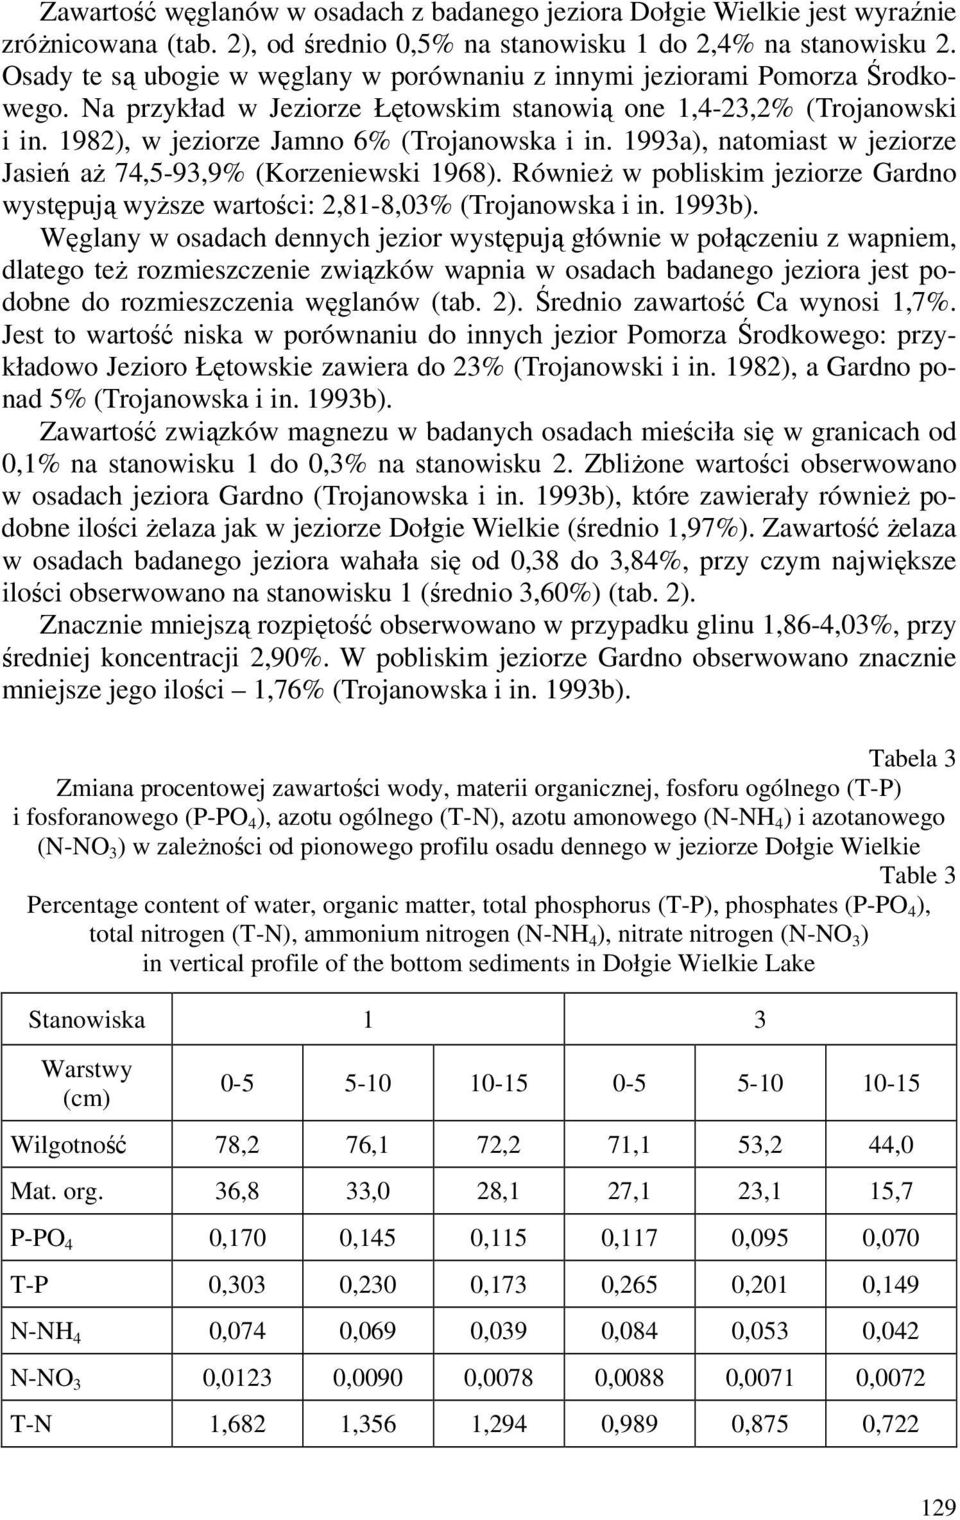 1982), w jeziorze Jamno 6% (Trojanowska i in. 1993a), natomiast w jeziorze Jasień aż 74,5-93,9% (Korzeniewski 1968).